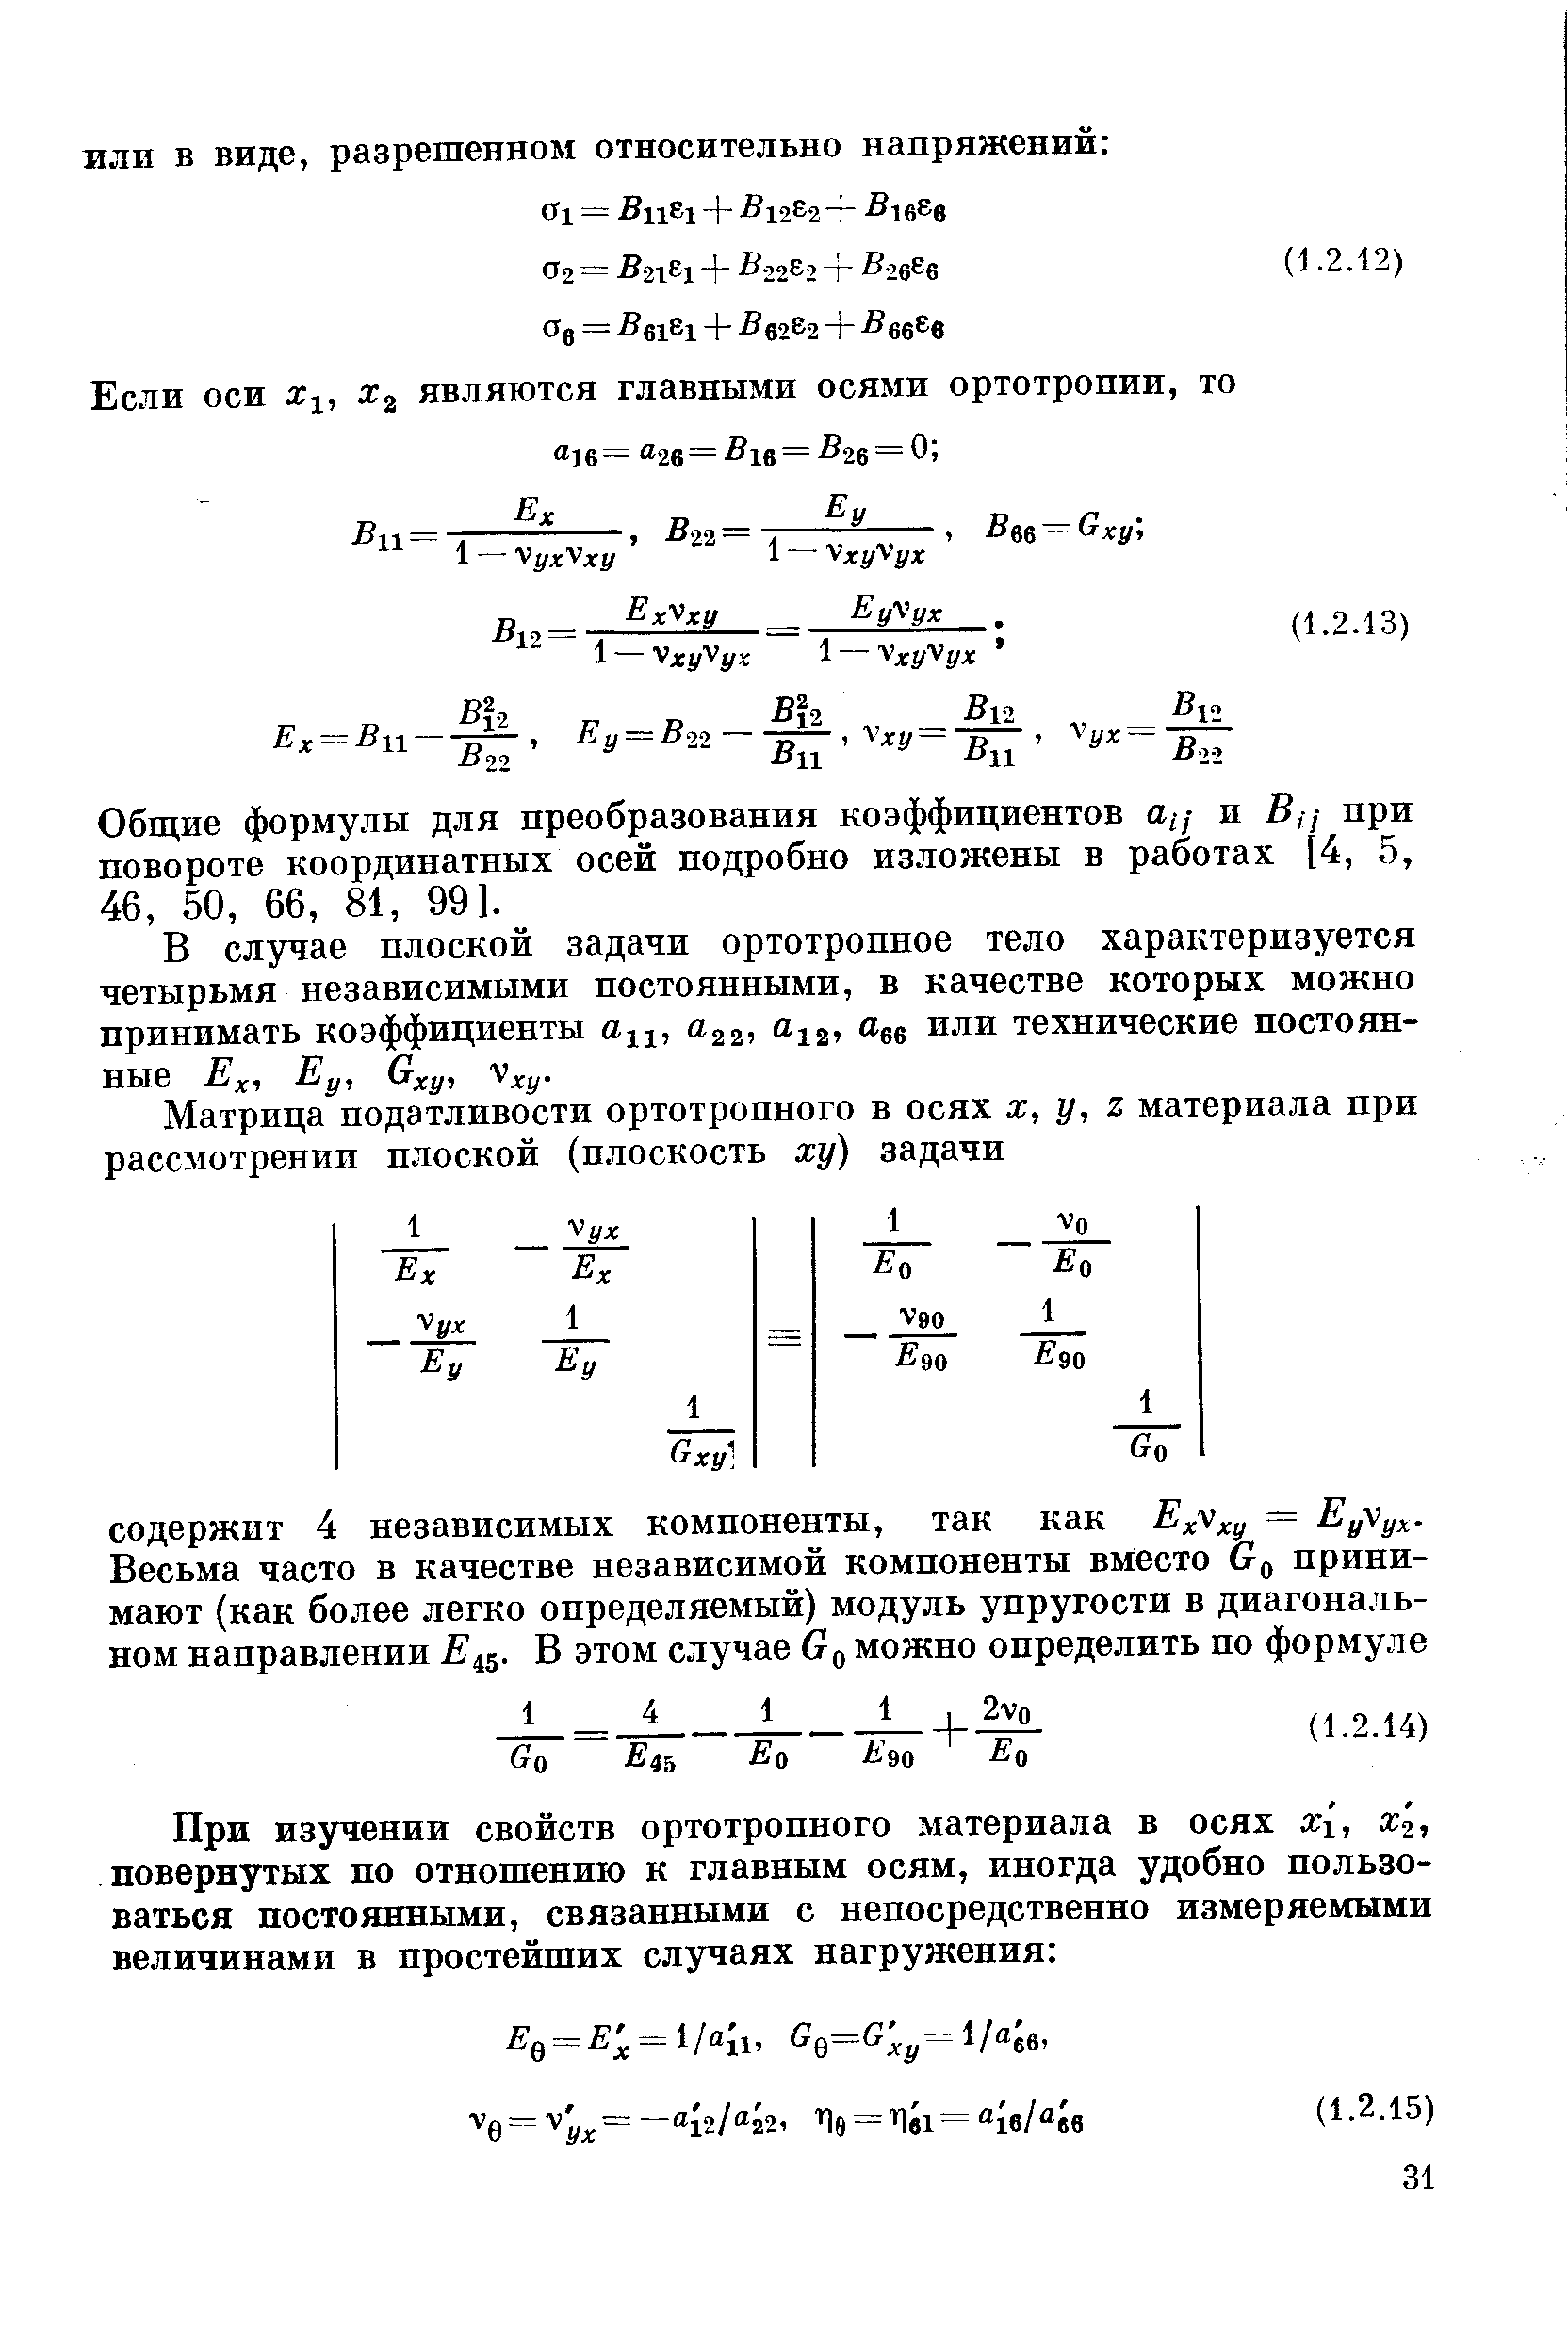 Общие формулы для преобразования коэффициентов ац и Вц при повороте координатных осей подробно изложены в работах [4, 5, 46, 50, 66, 81, 99].
